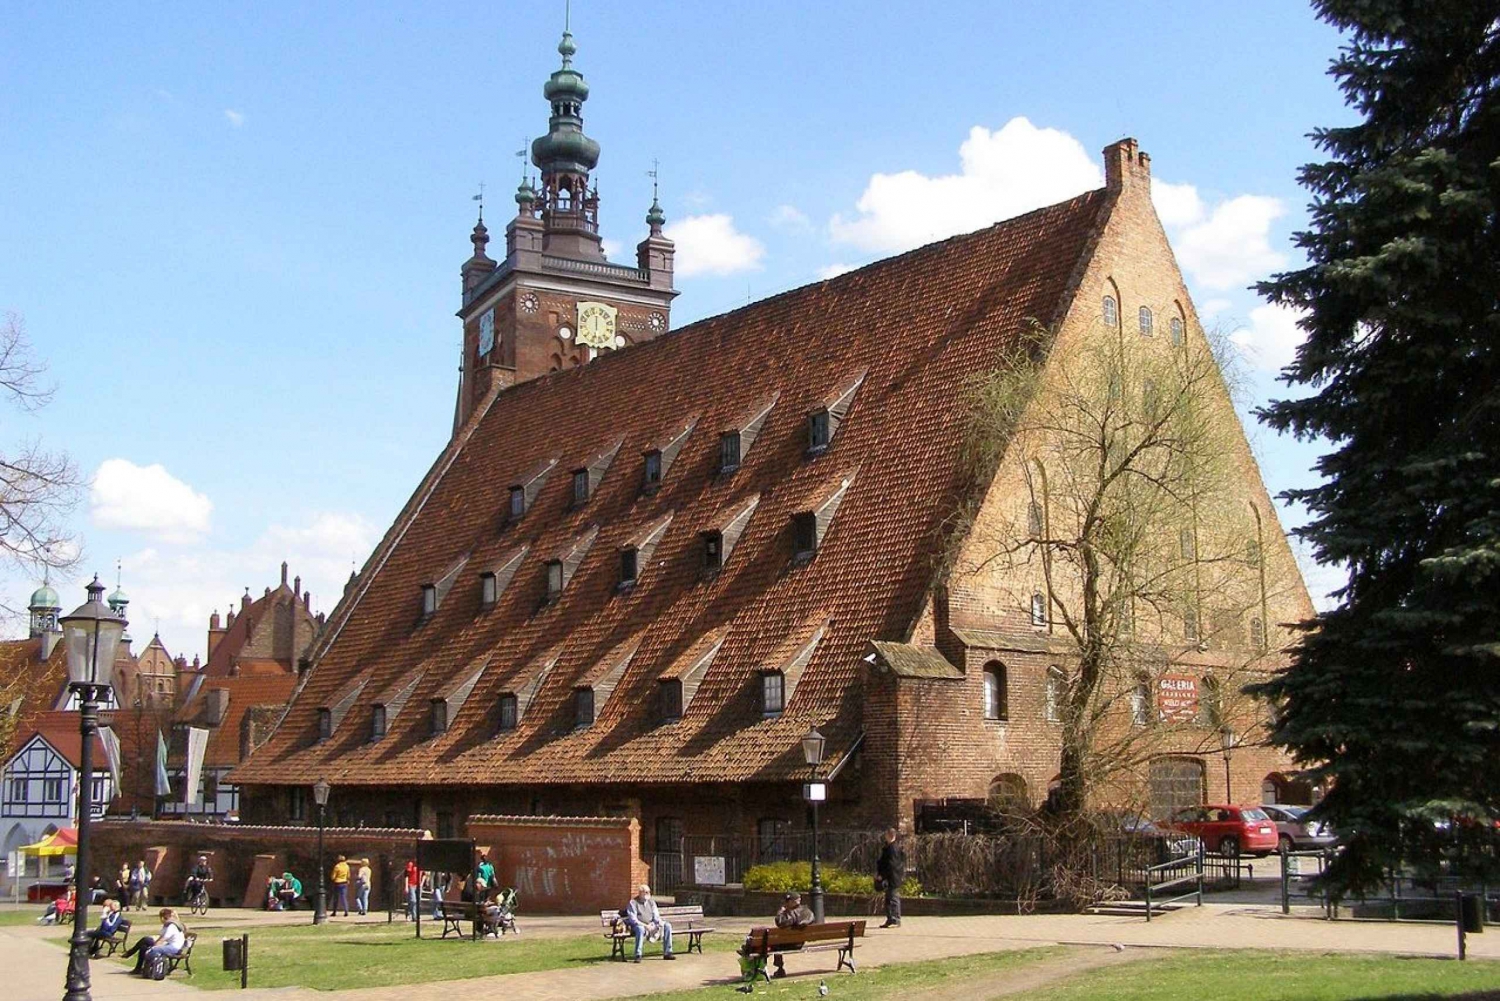 Zwiedzanie Starego Miasta w Gdańsku 4 godziny